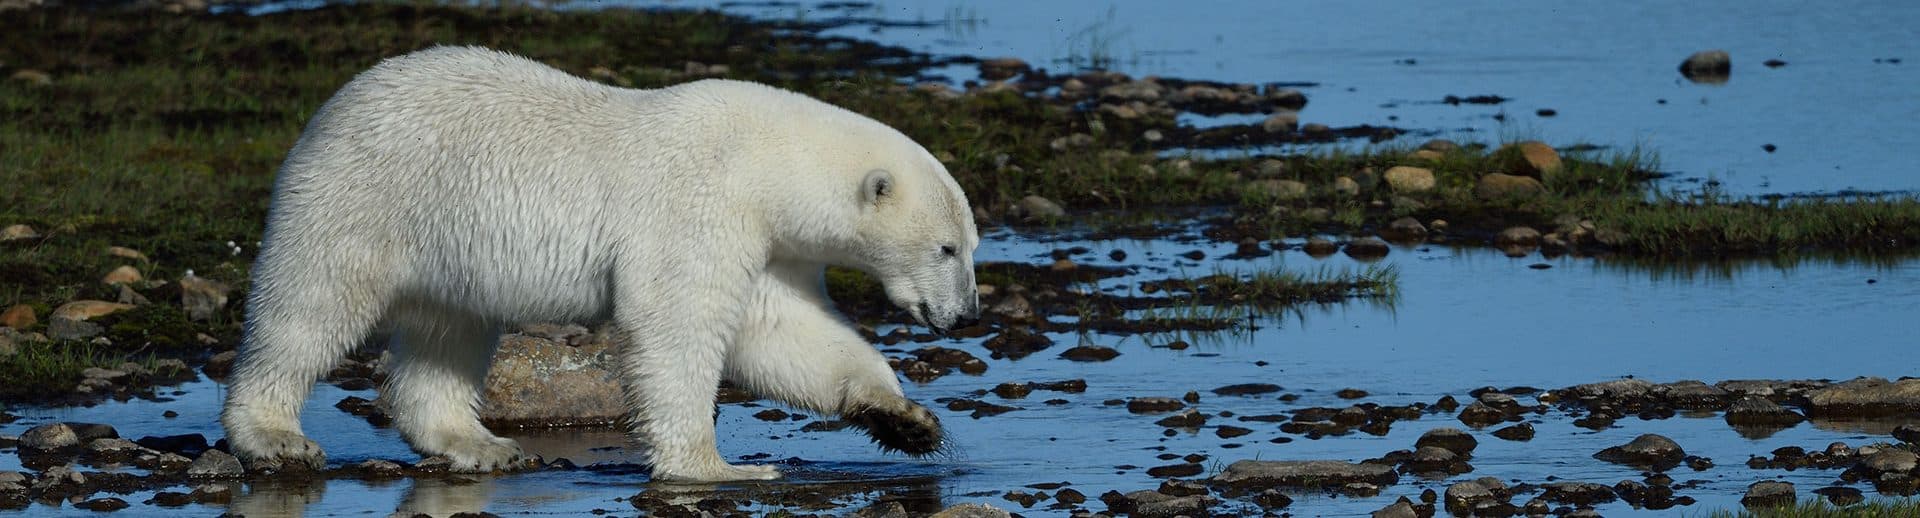 Polar bear in Labrador